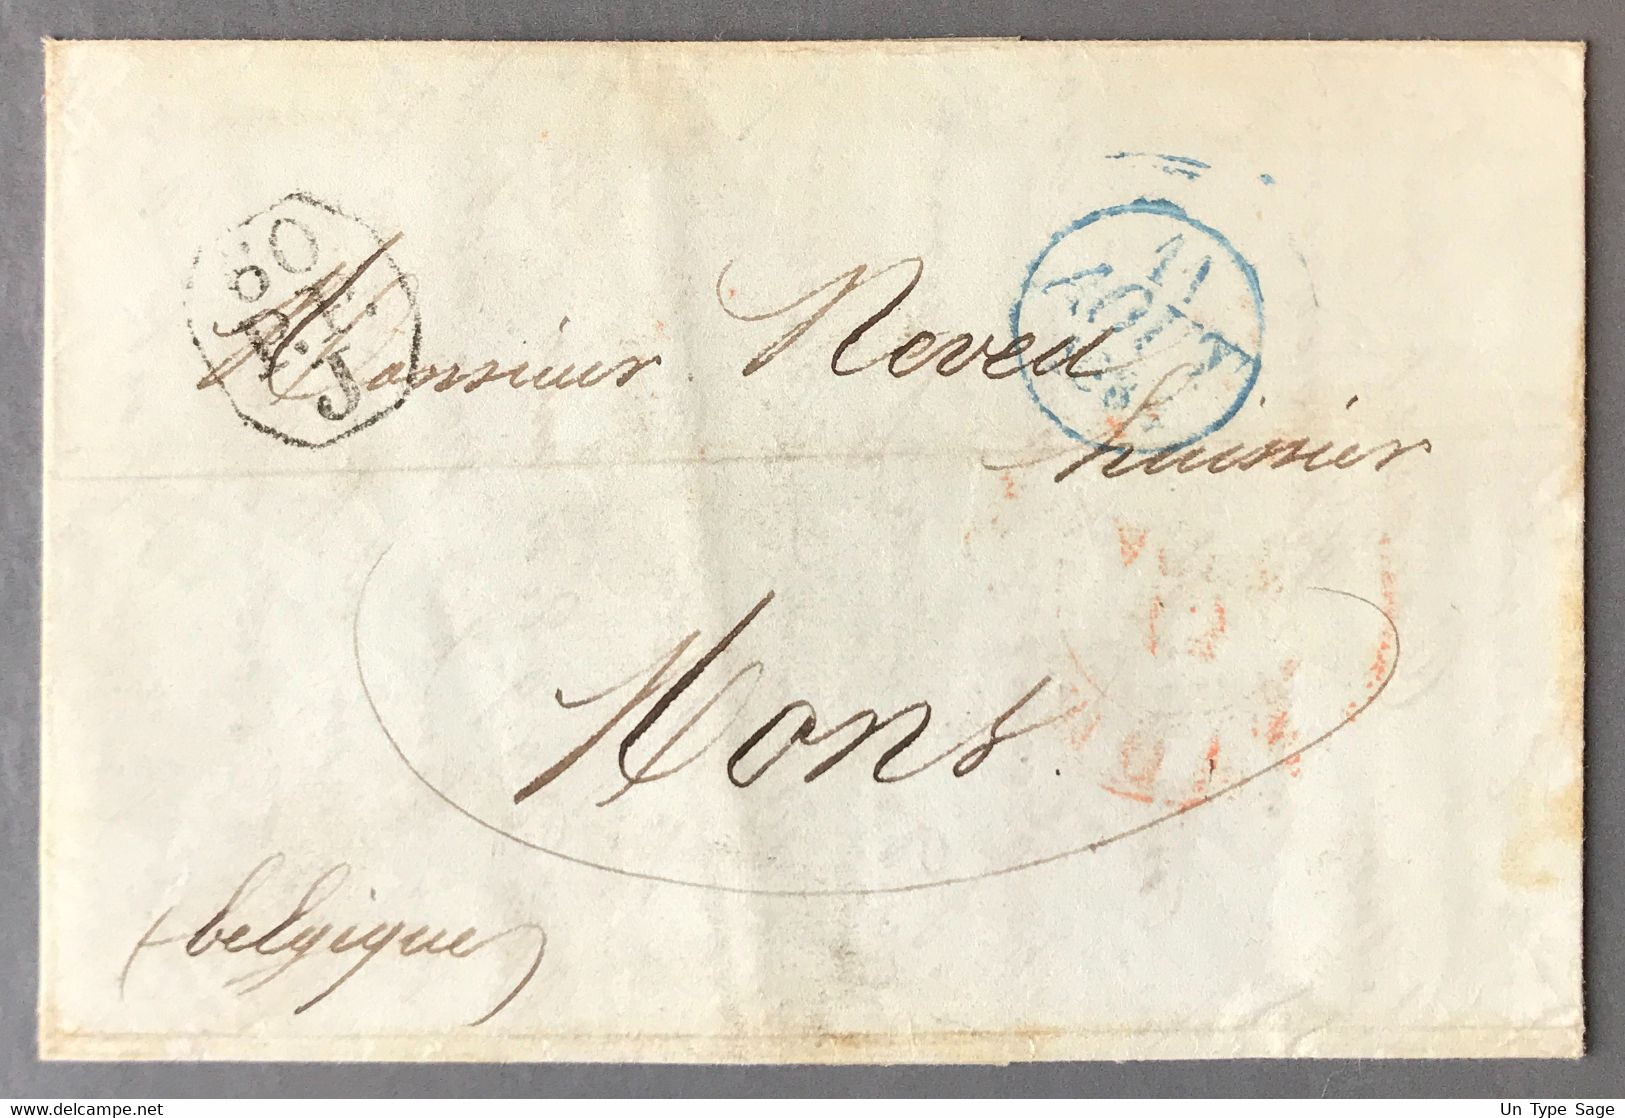 France Lettre De Paris 60 P.P. J Pour Mons, Belgique 31.7.1834 + Griffe FRANCE PAR MONS (verso) - (A422) - 1801-1848: Précurseurs XIX